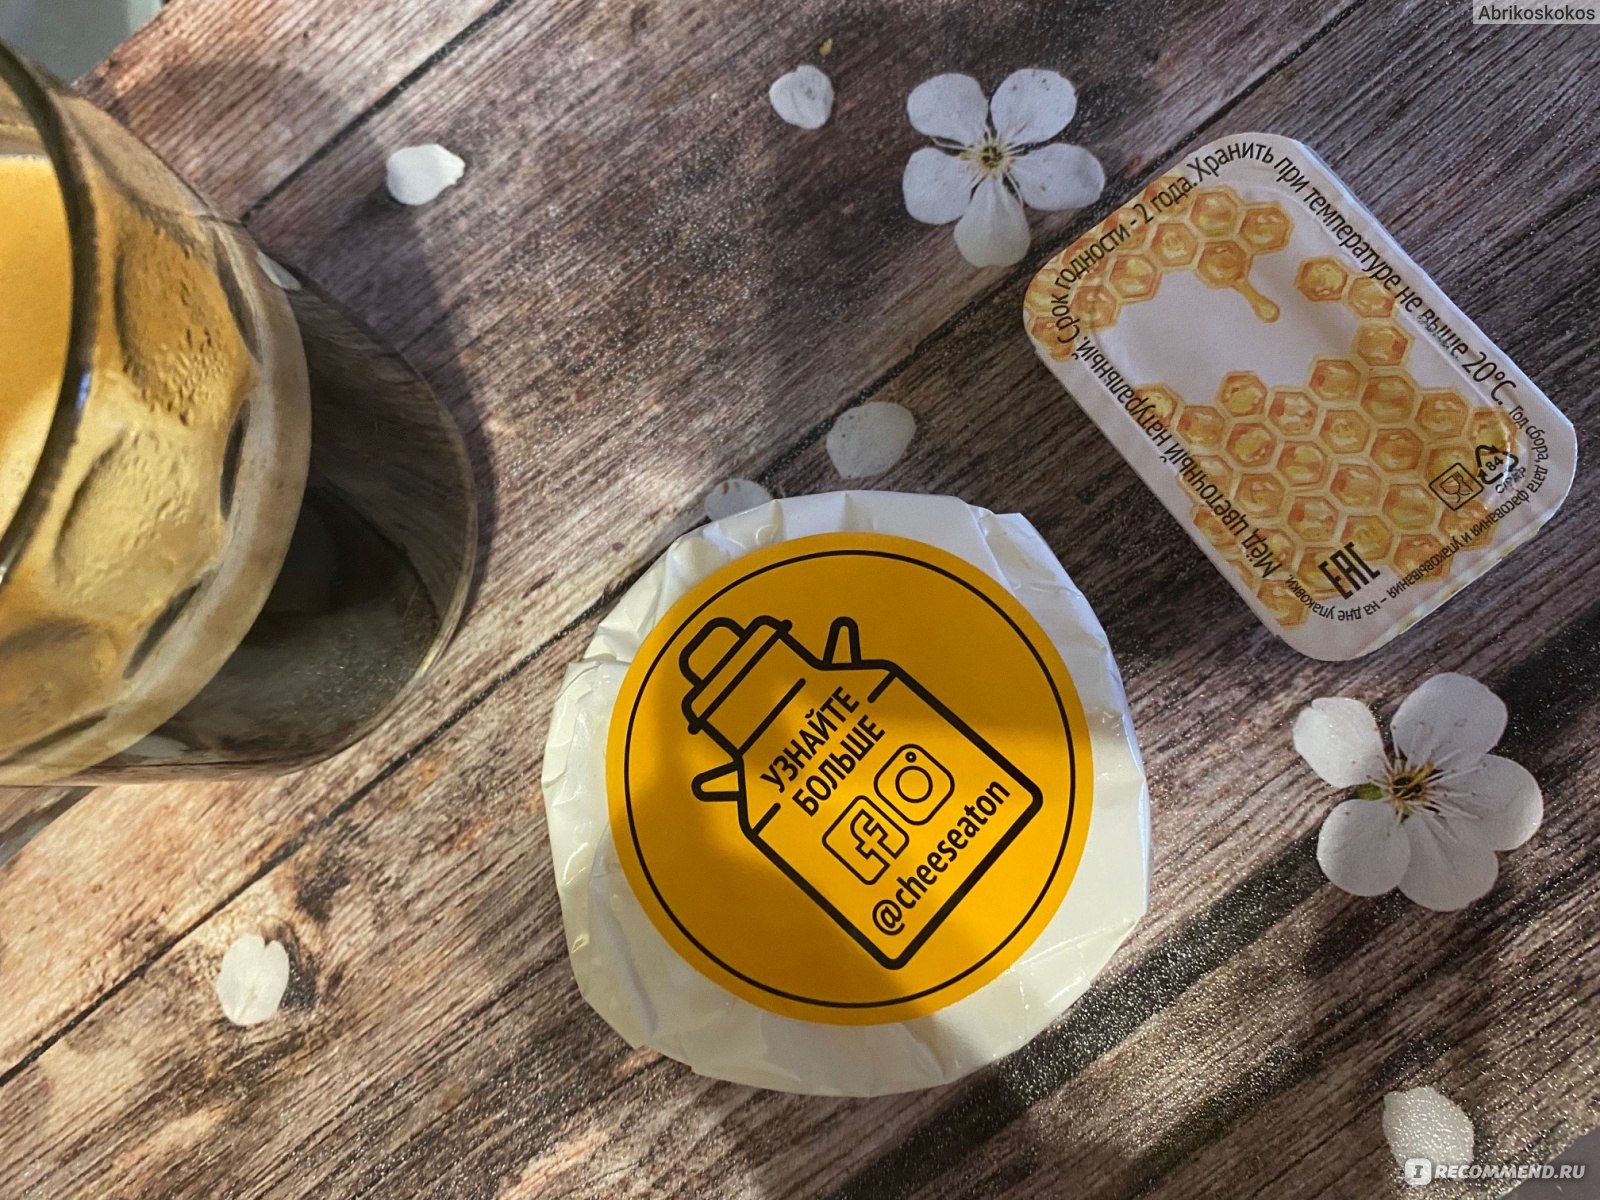 Сыр с медом купить